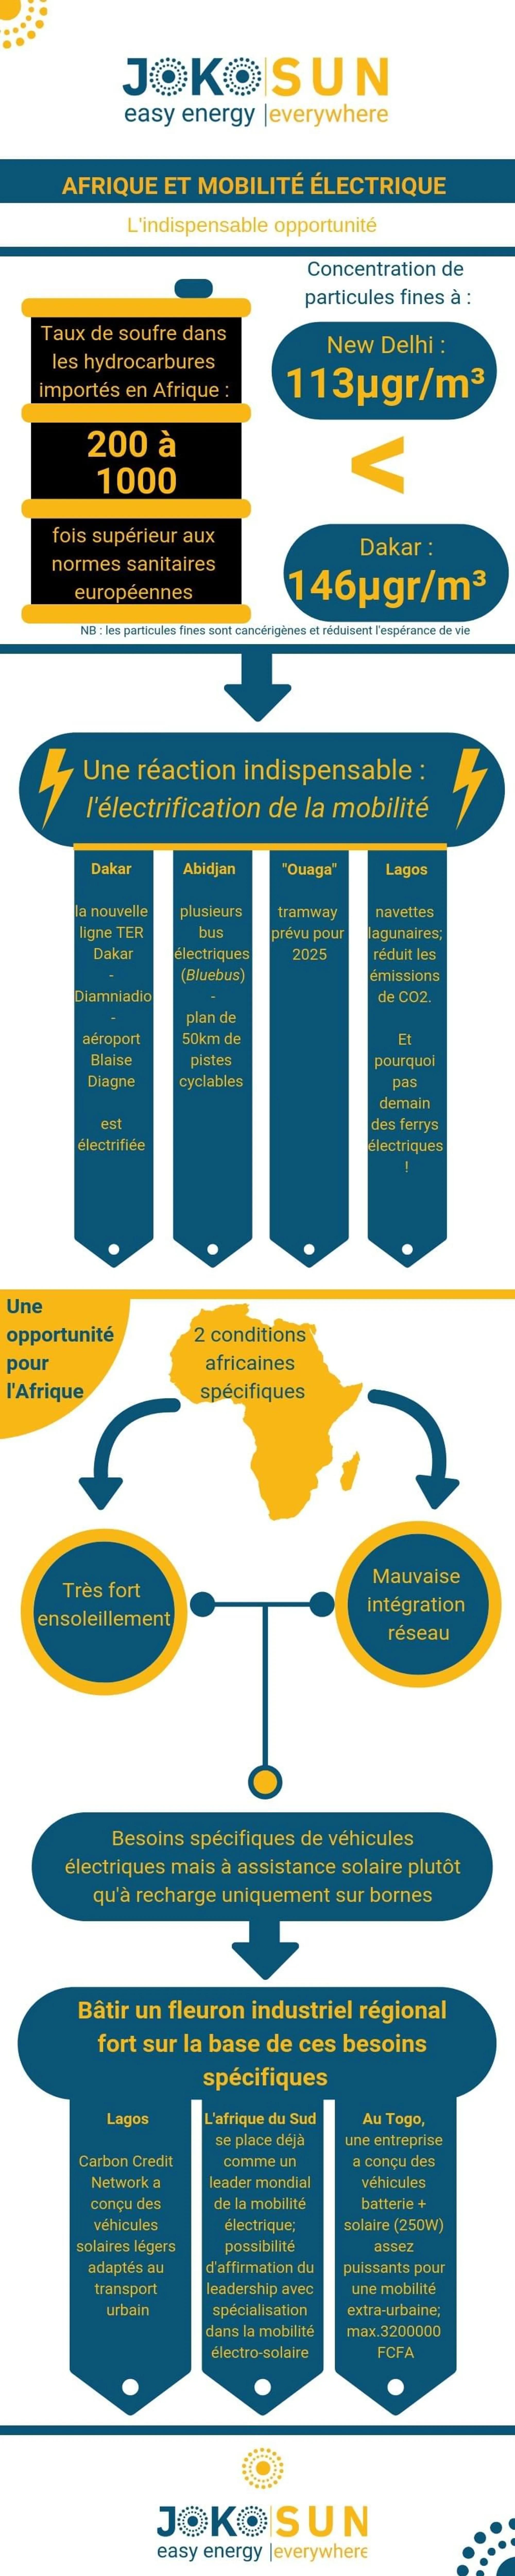 Infographie Jokosun : Opportunités en Afrique pour les mobilités électriques 